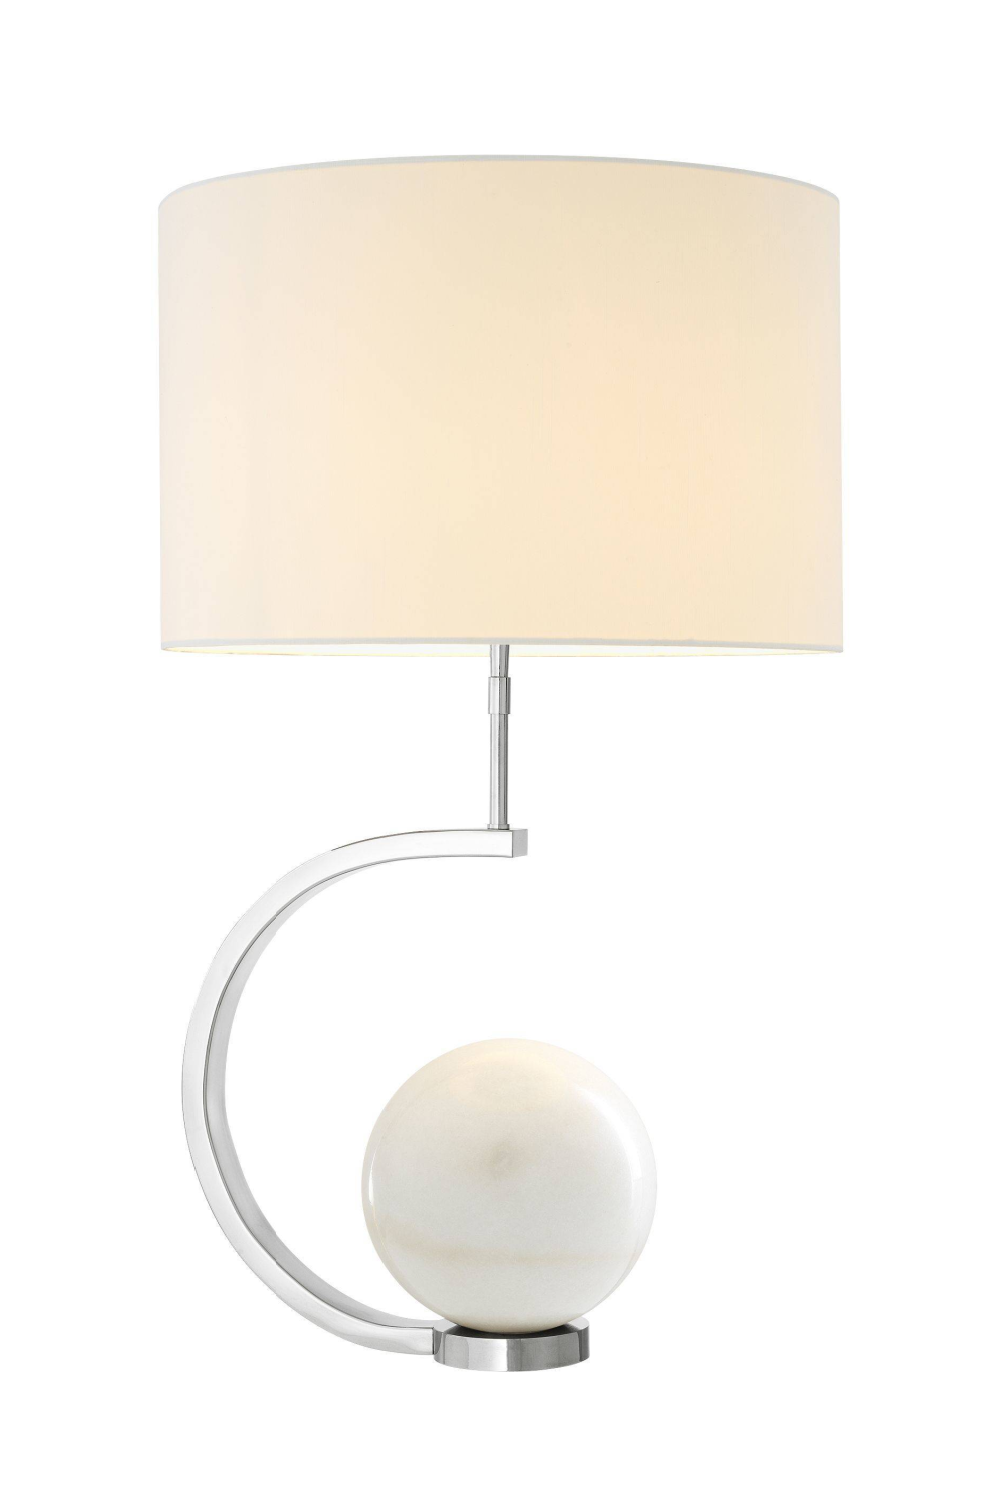 White Marble Table Lamp | Eichholtz Luigi | OROA